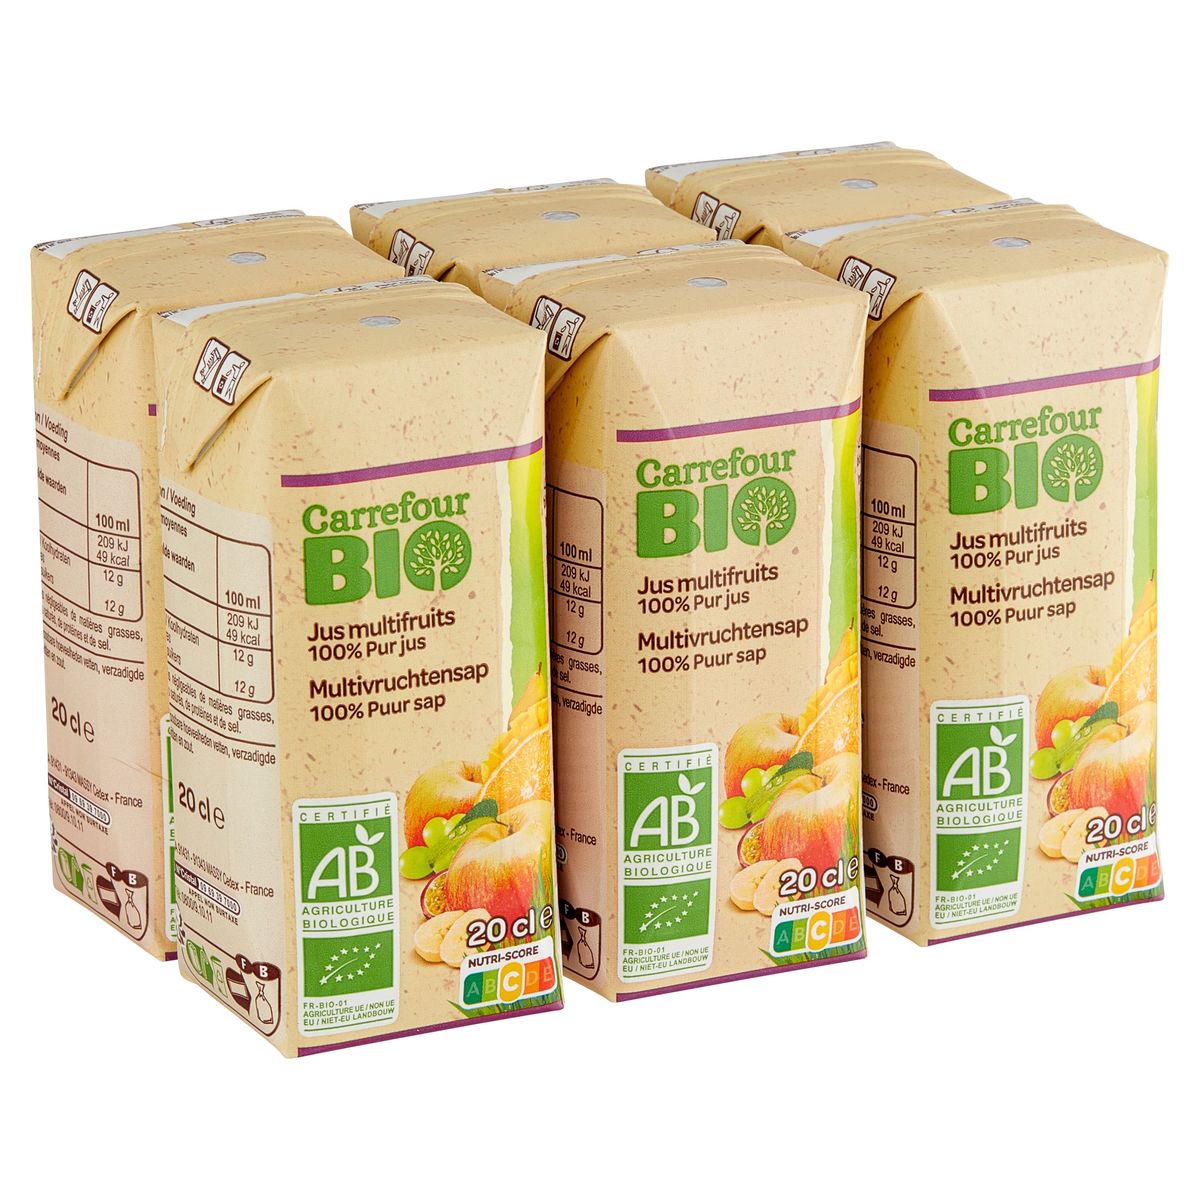 Carrefour Bio Multivruchtensap 100% Puur Sap 6 x 20 cl